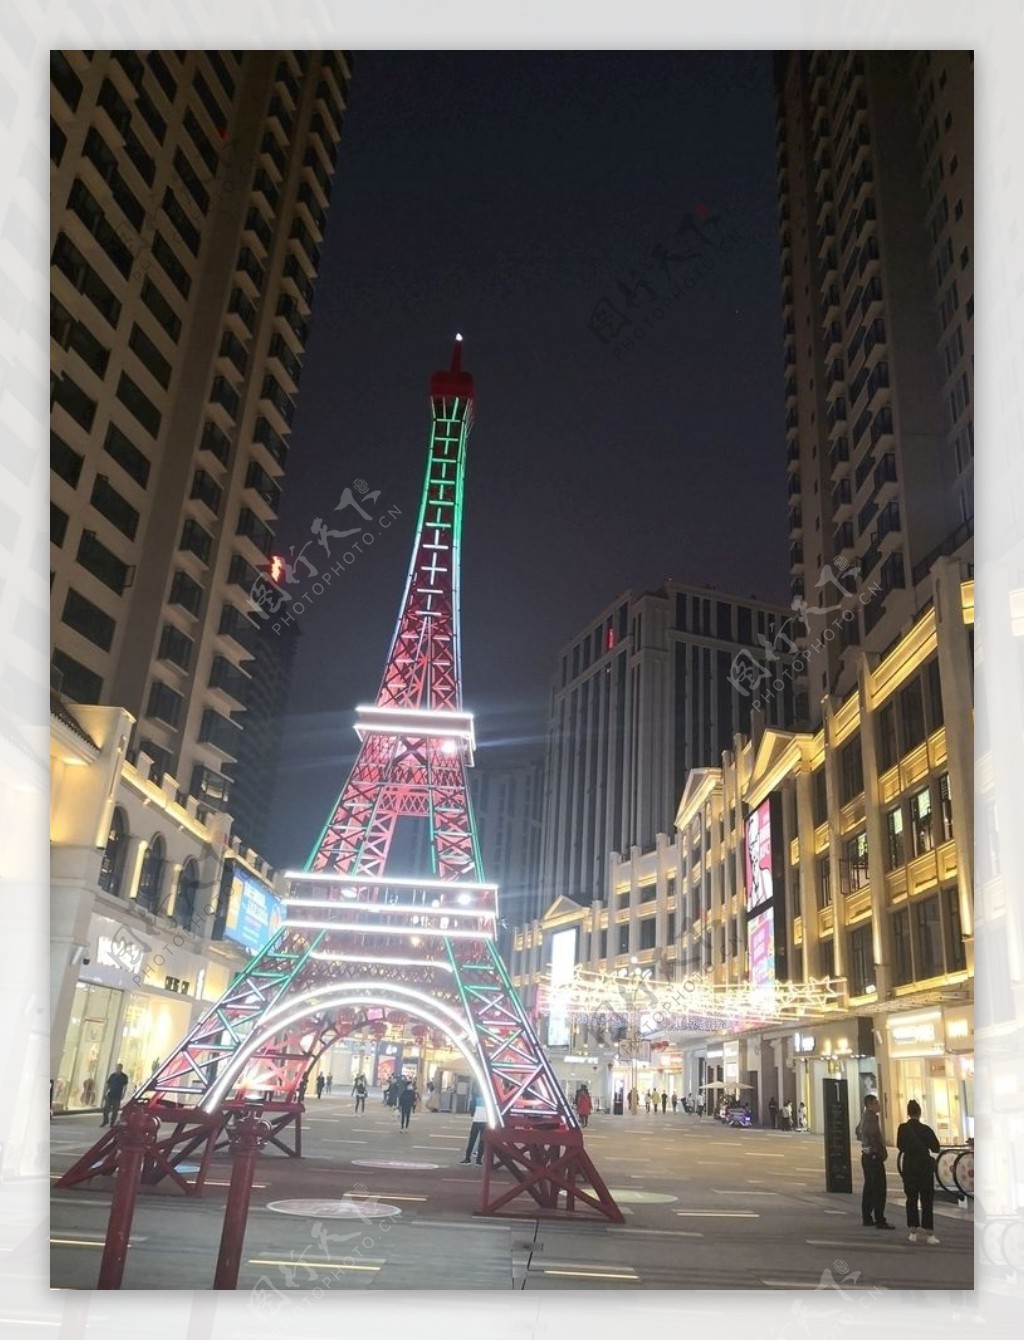 爱富尔铁塔商业街夜景图片